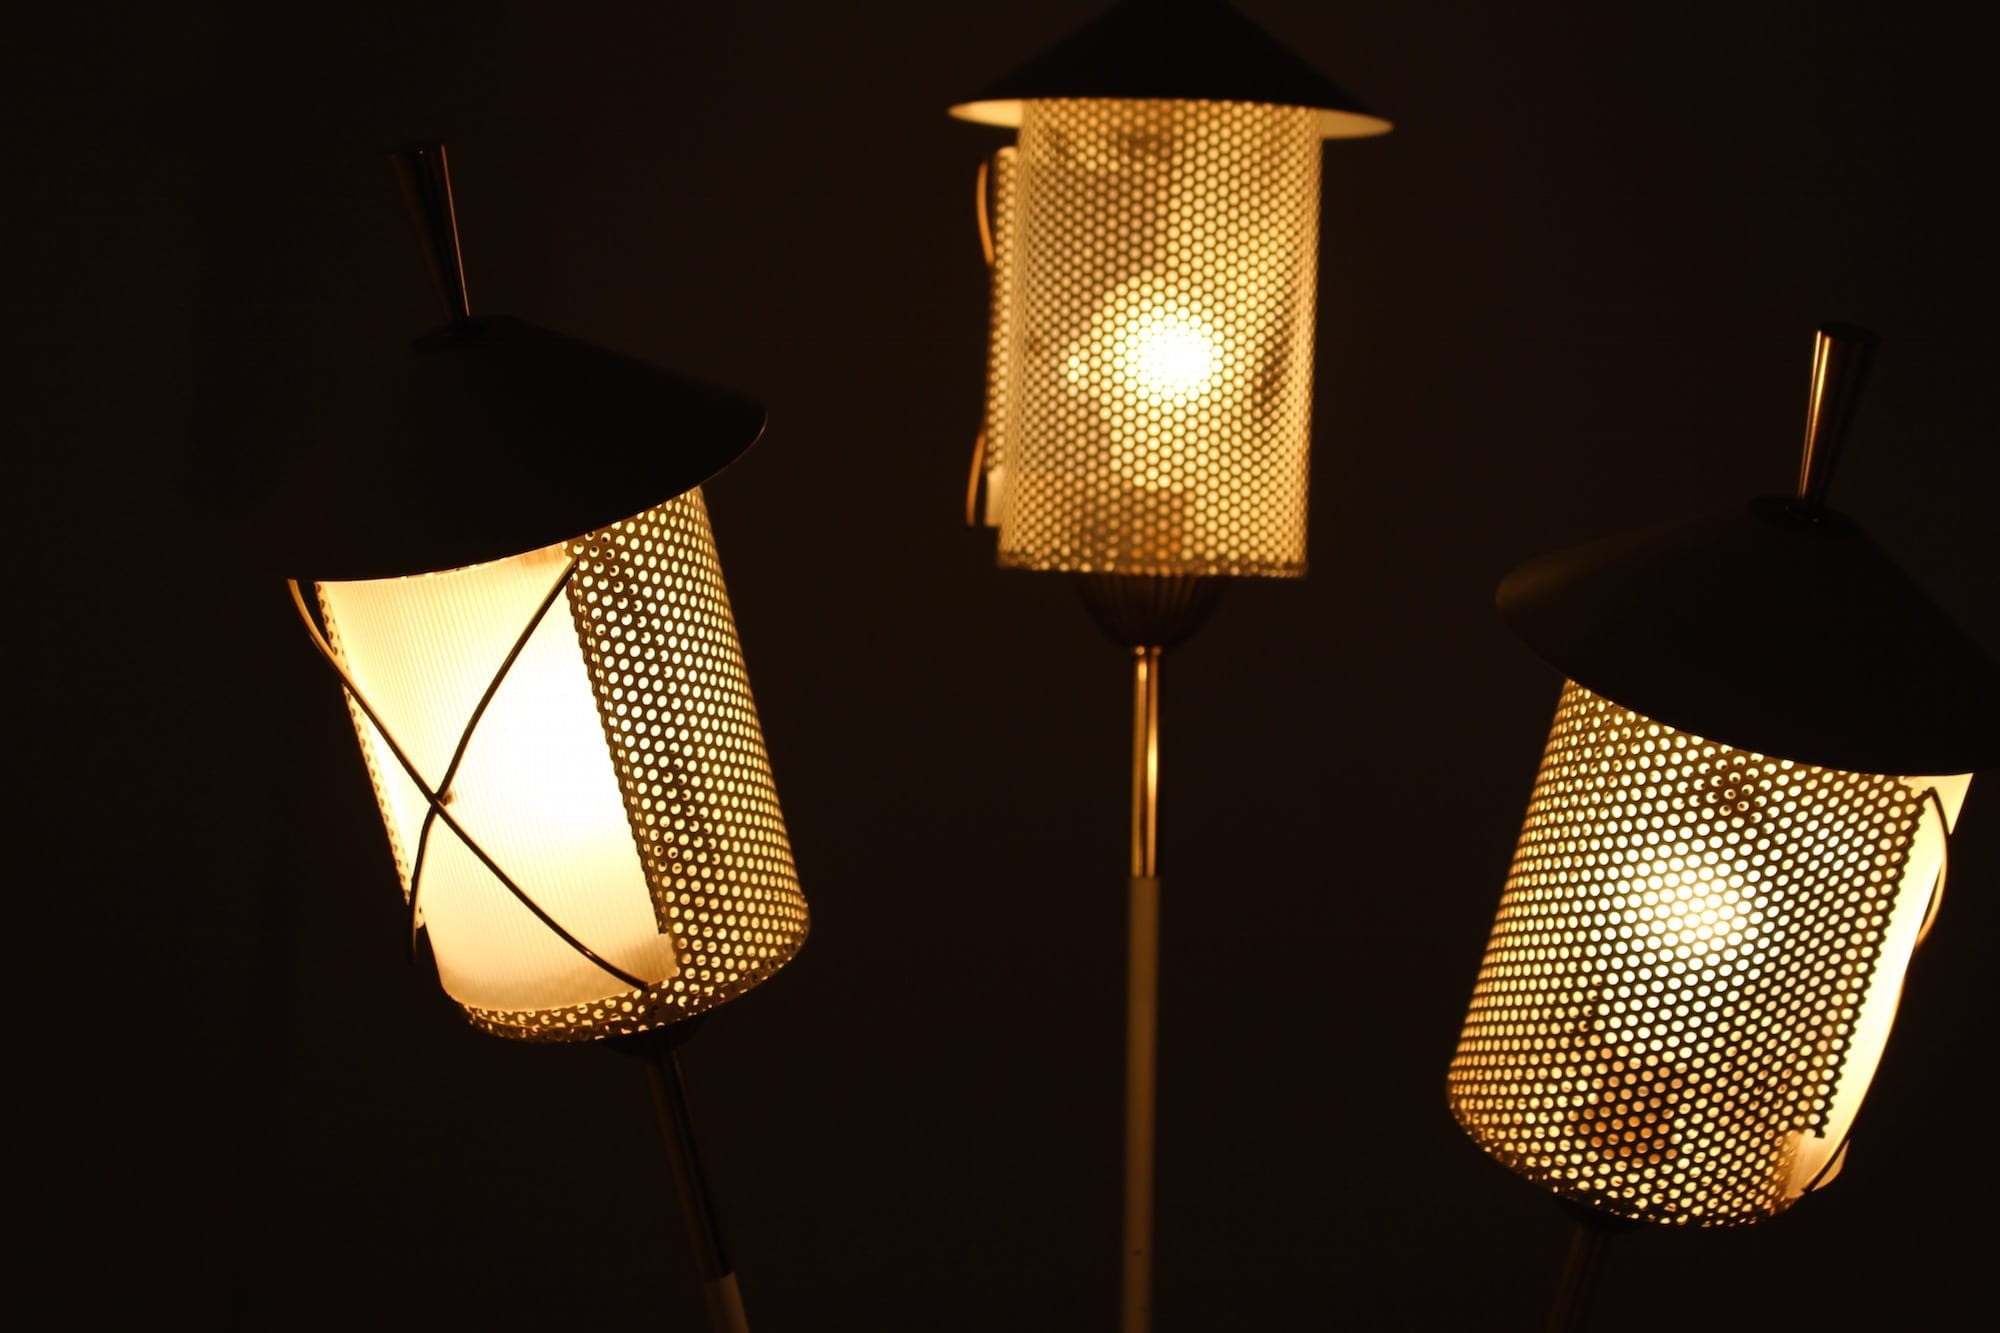 NE JETEZ PLUS VOS VIEUX LAMPADAIRES HALOGENES - Le blog de feedautomne